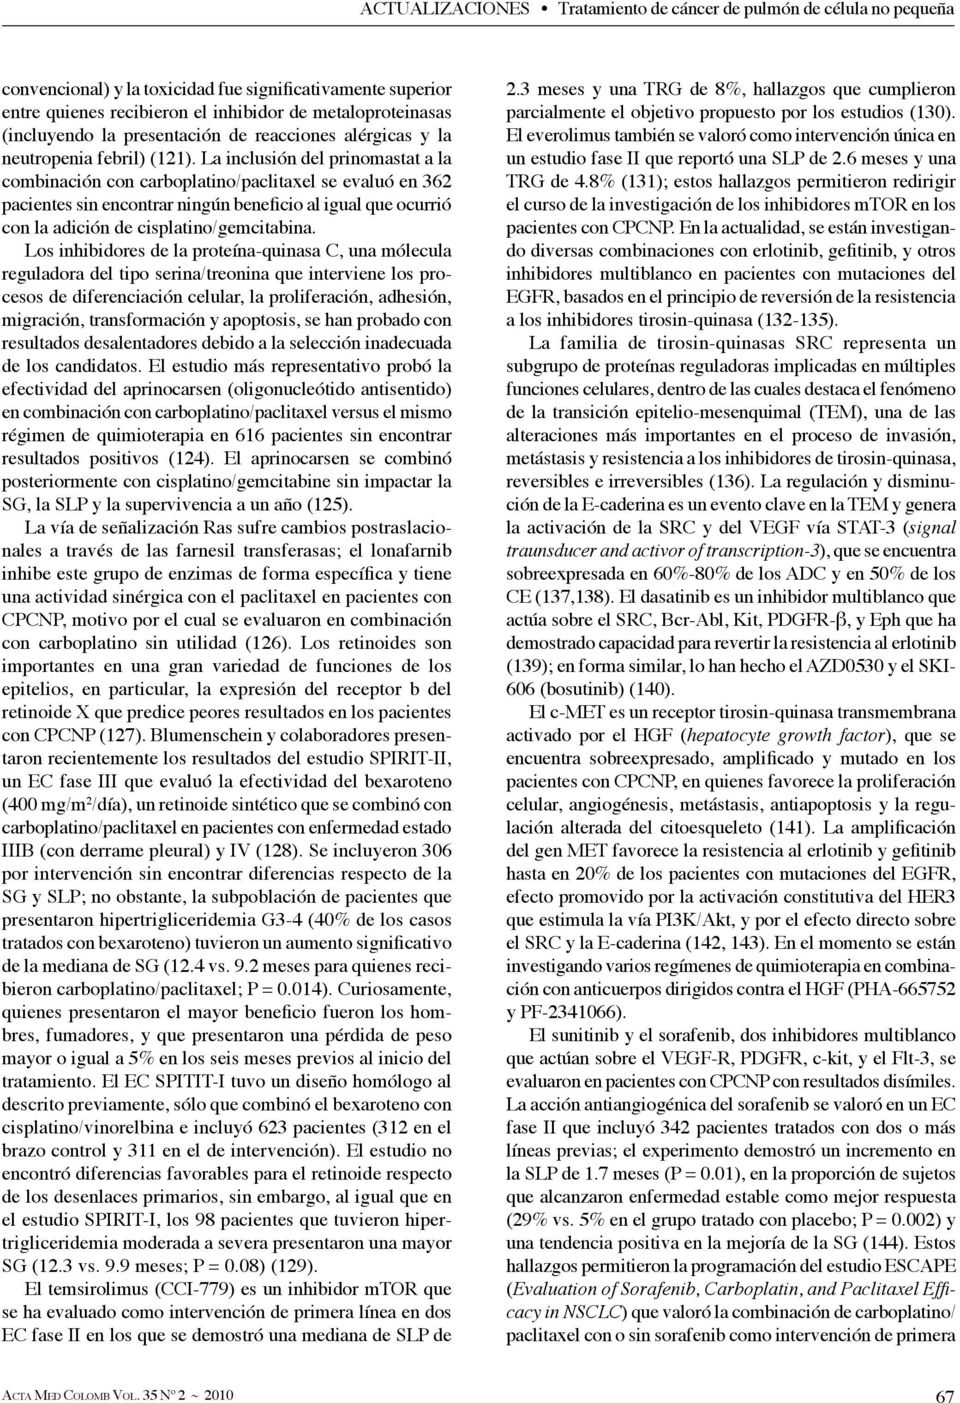 La inclusión del prinomastat a la combinación con carboplatino/paclitaxel se evaluó en 362 pacientes sin encontrar ningún beneficio al igual que ocurrió con la adición de cisplatino/gemcitabina.